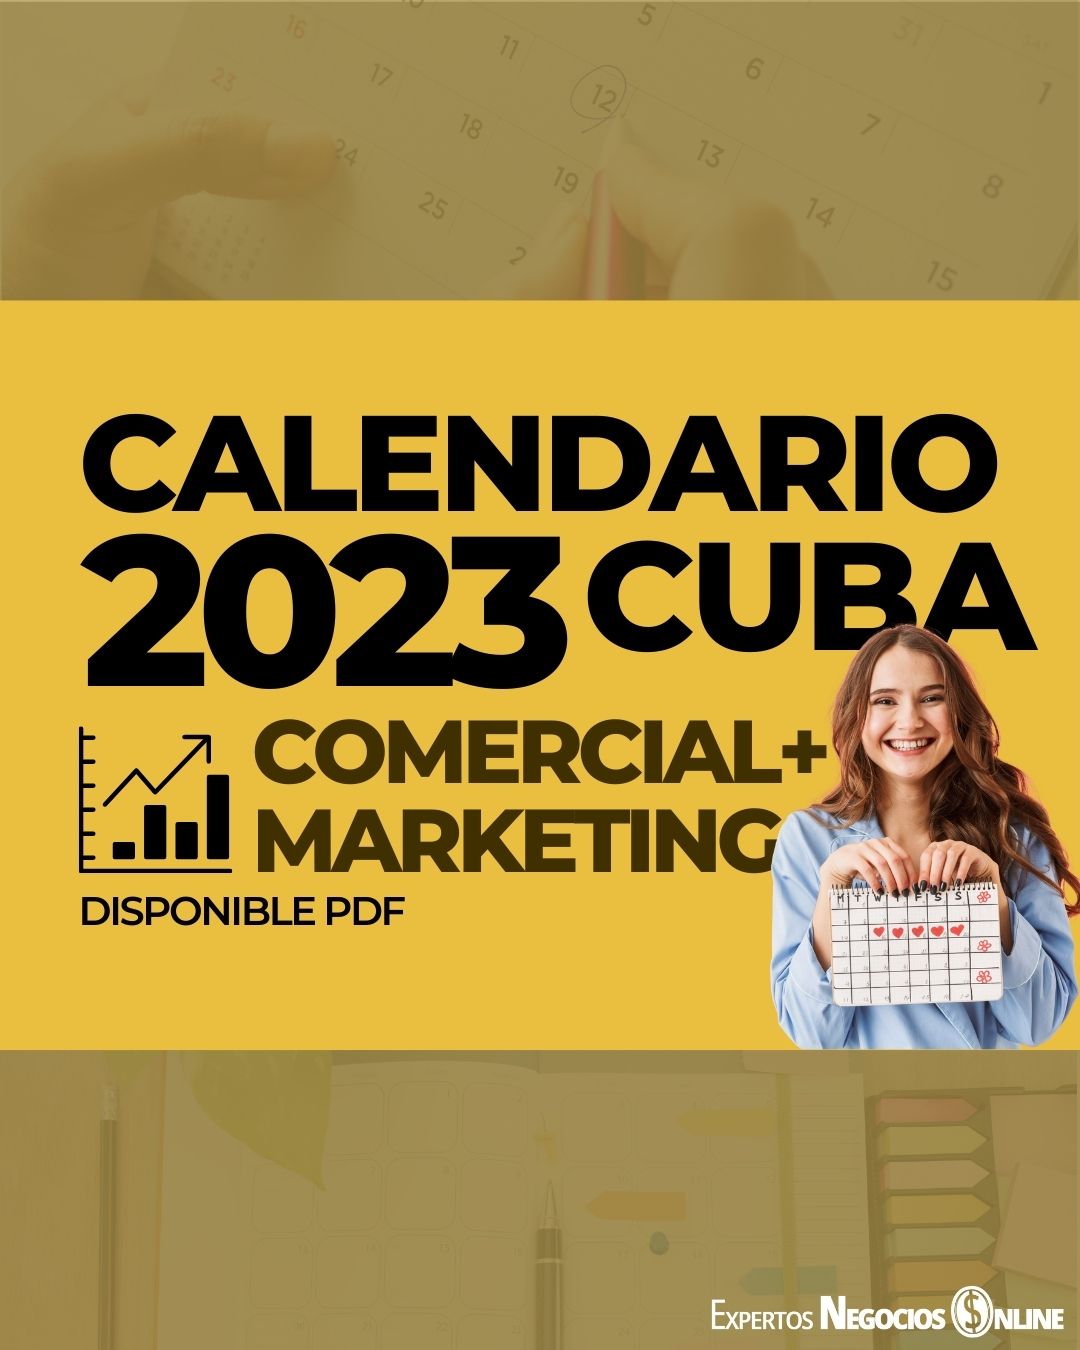 Calendario marketing 2023 Cuba. Fechas especiales, comerciales & importantes